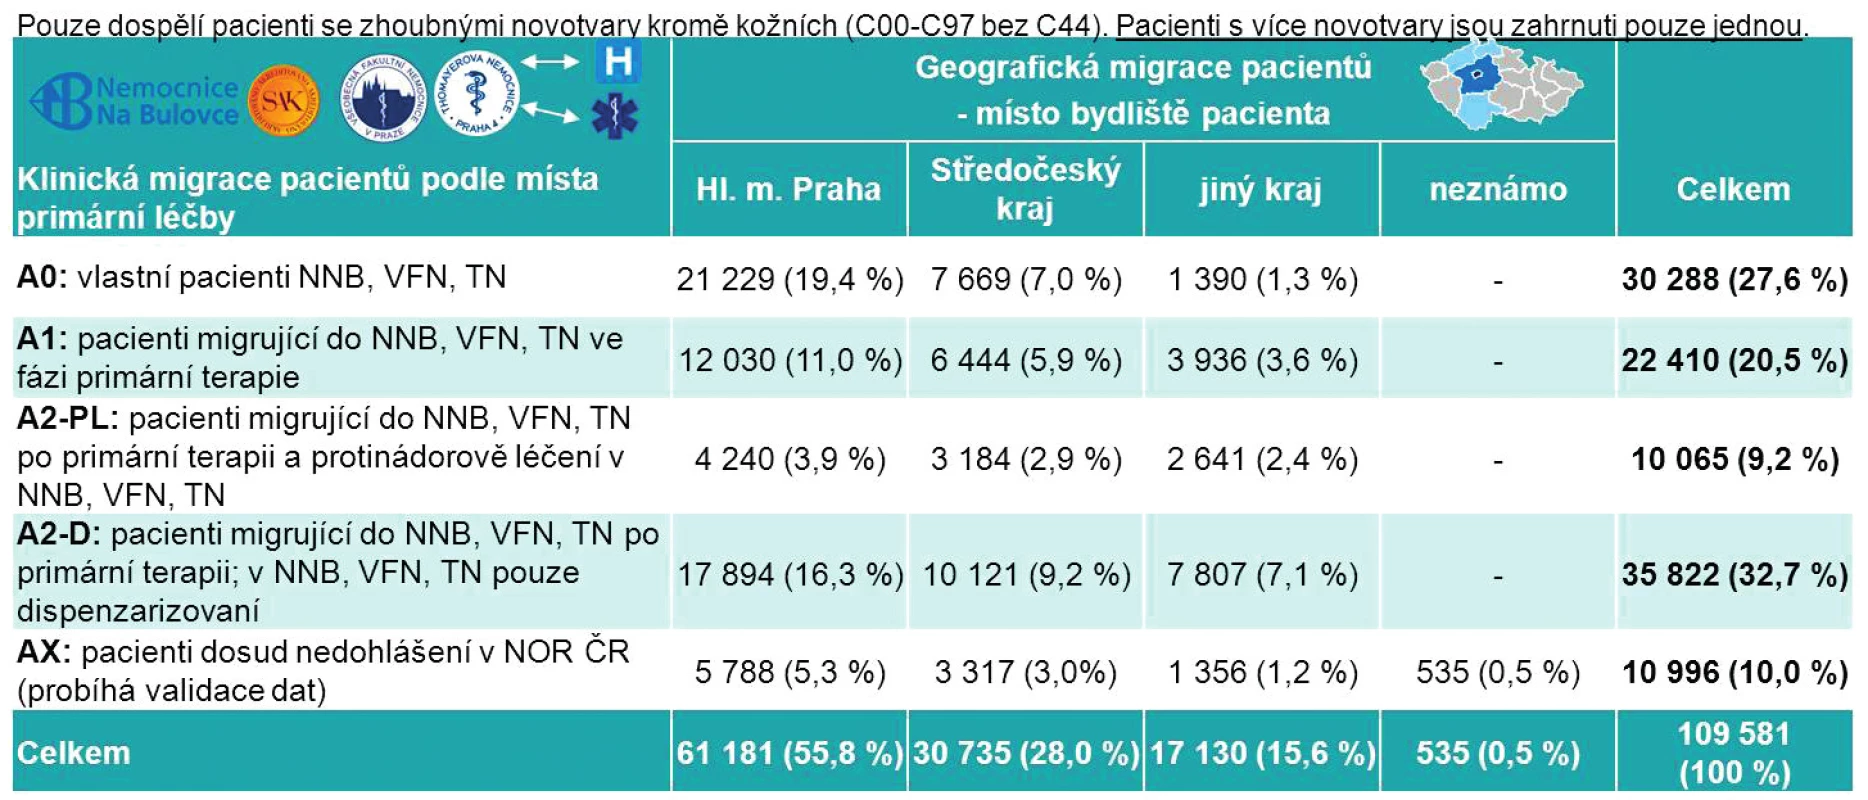 Celkové počty pacientů dostupné pro analýzy (pacienti léčení v NNB, VFN, TN leden 2007 až prosinec 2013) (zdroj: Národní onkologický registr ČR + data NNB, VFN, TN + datábáze bydlišť pacientů)